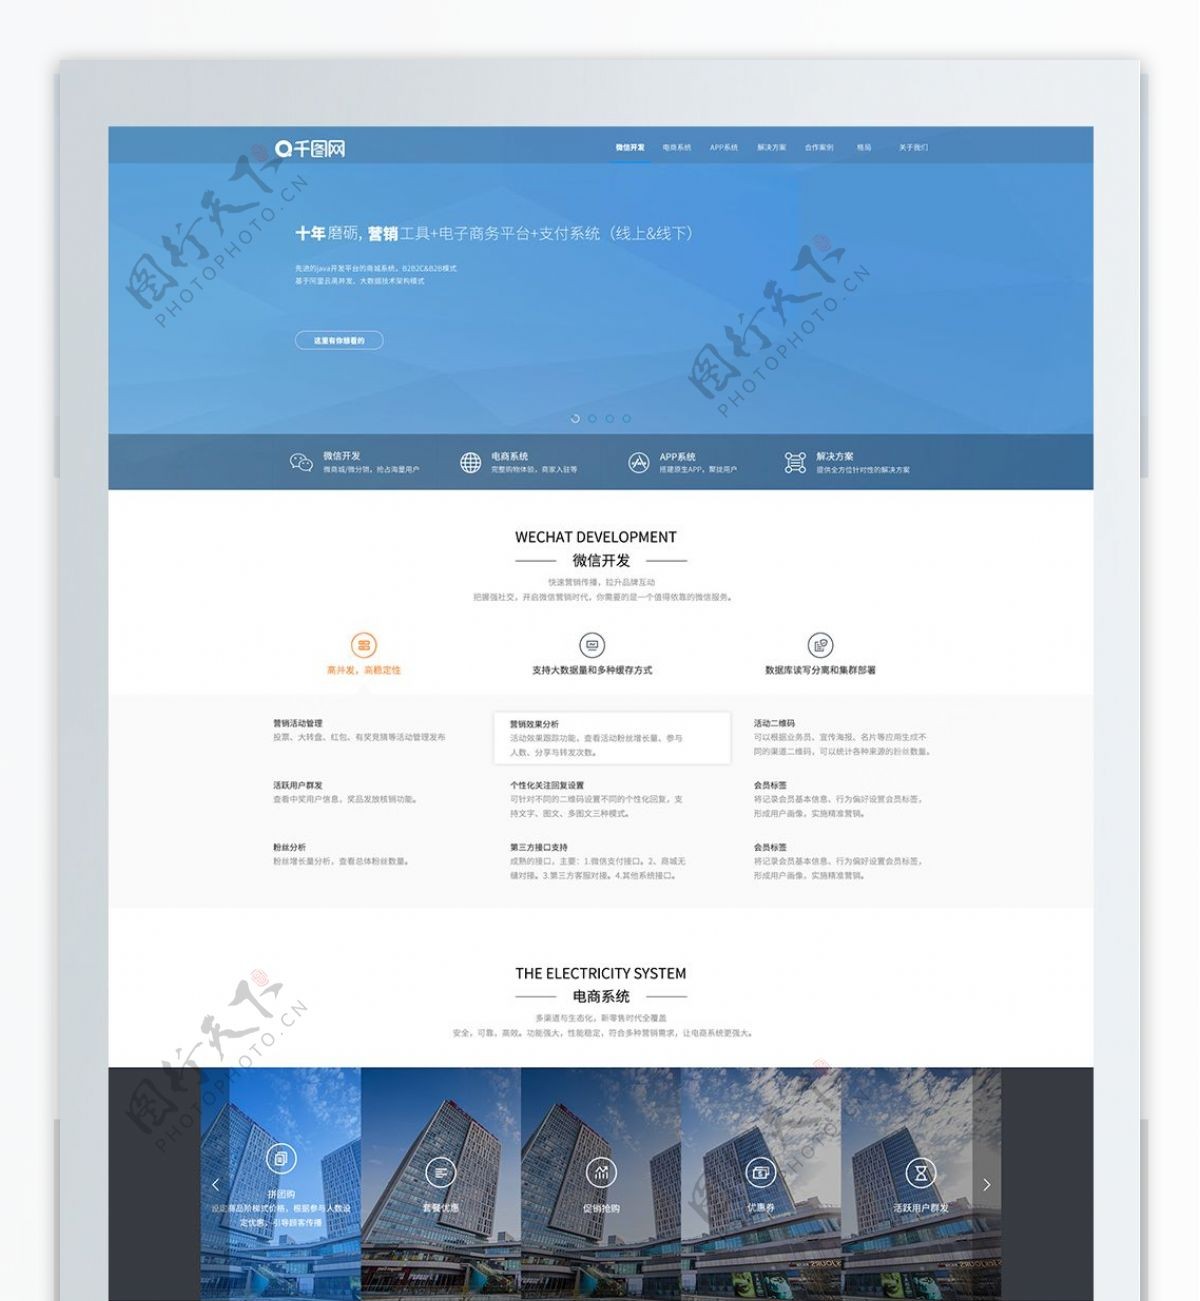 蓝色科技互联网企业官方网站首页界面设计